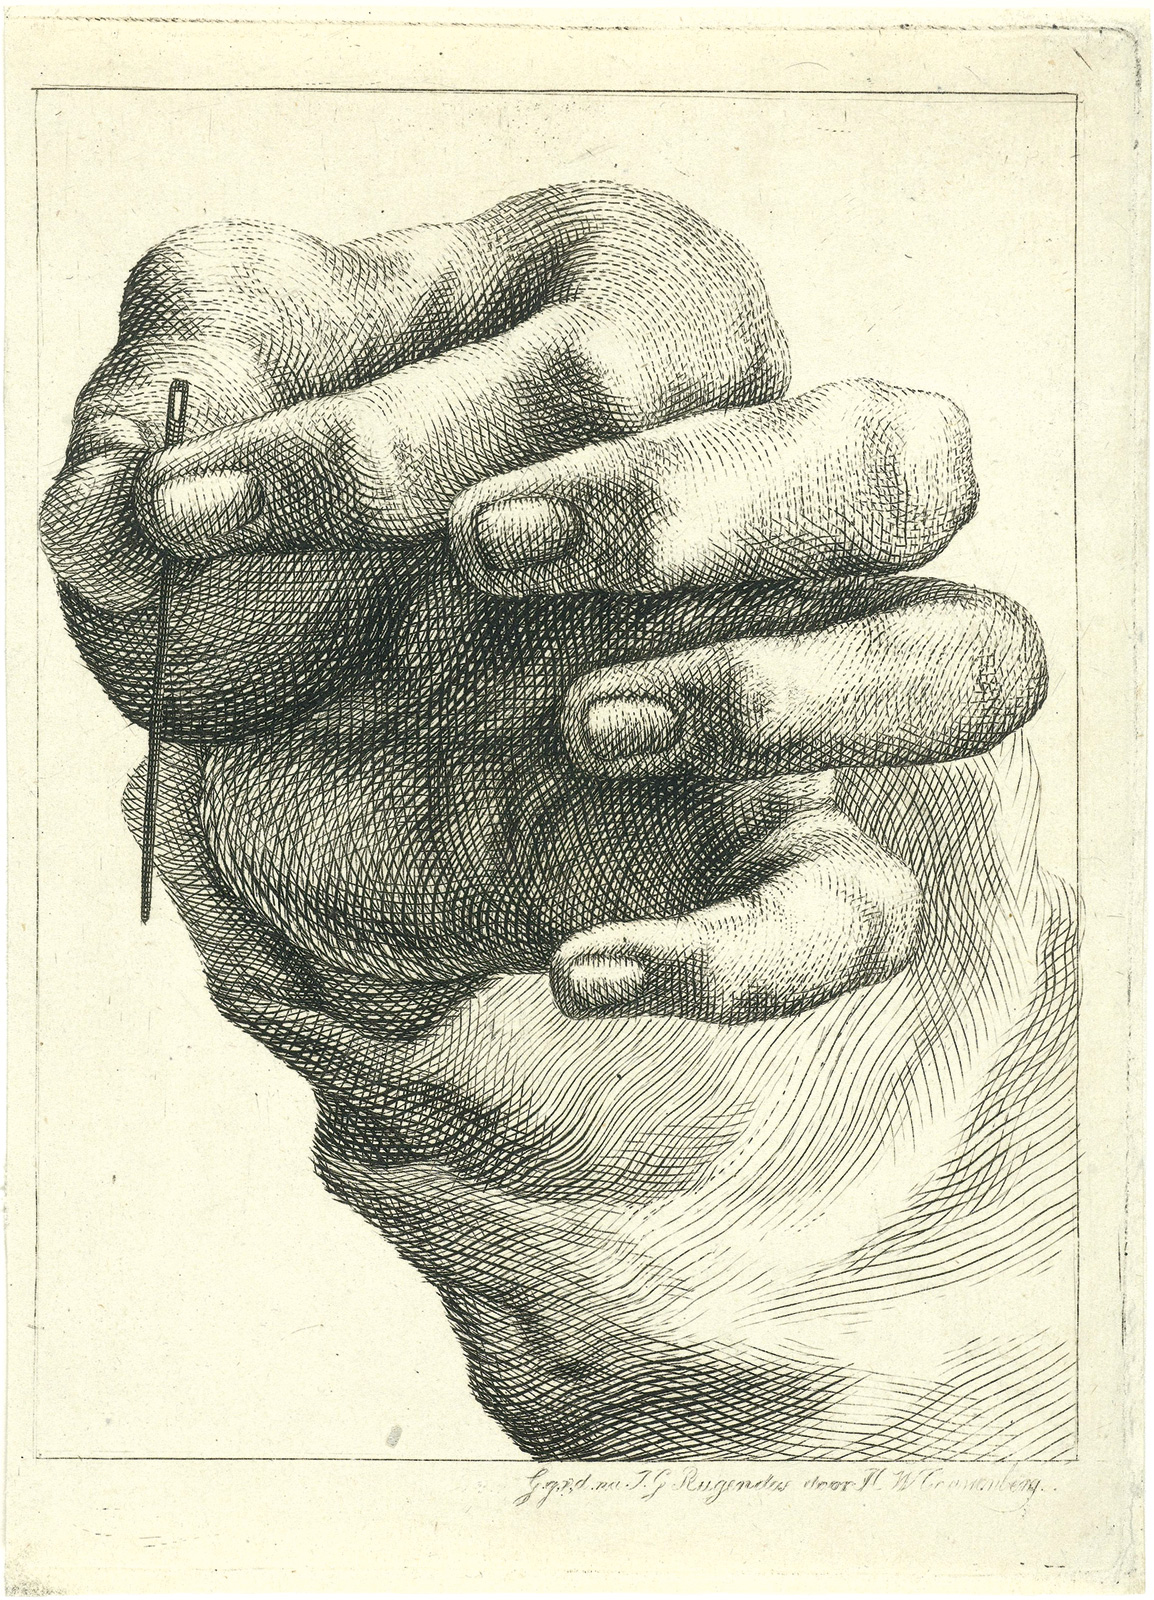 Henricus Wilhelmus Couwenberg, *Estudio de una mano con una aguja entre el pulgar y el índice*. *ca*. 1830. Rijksmuseum 